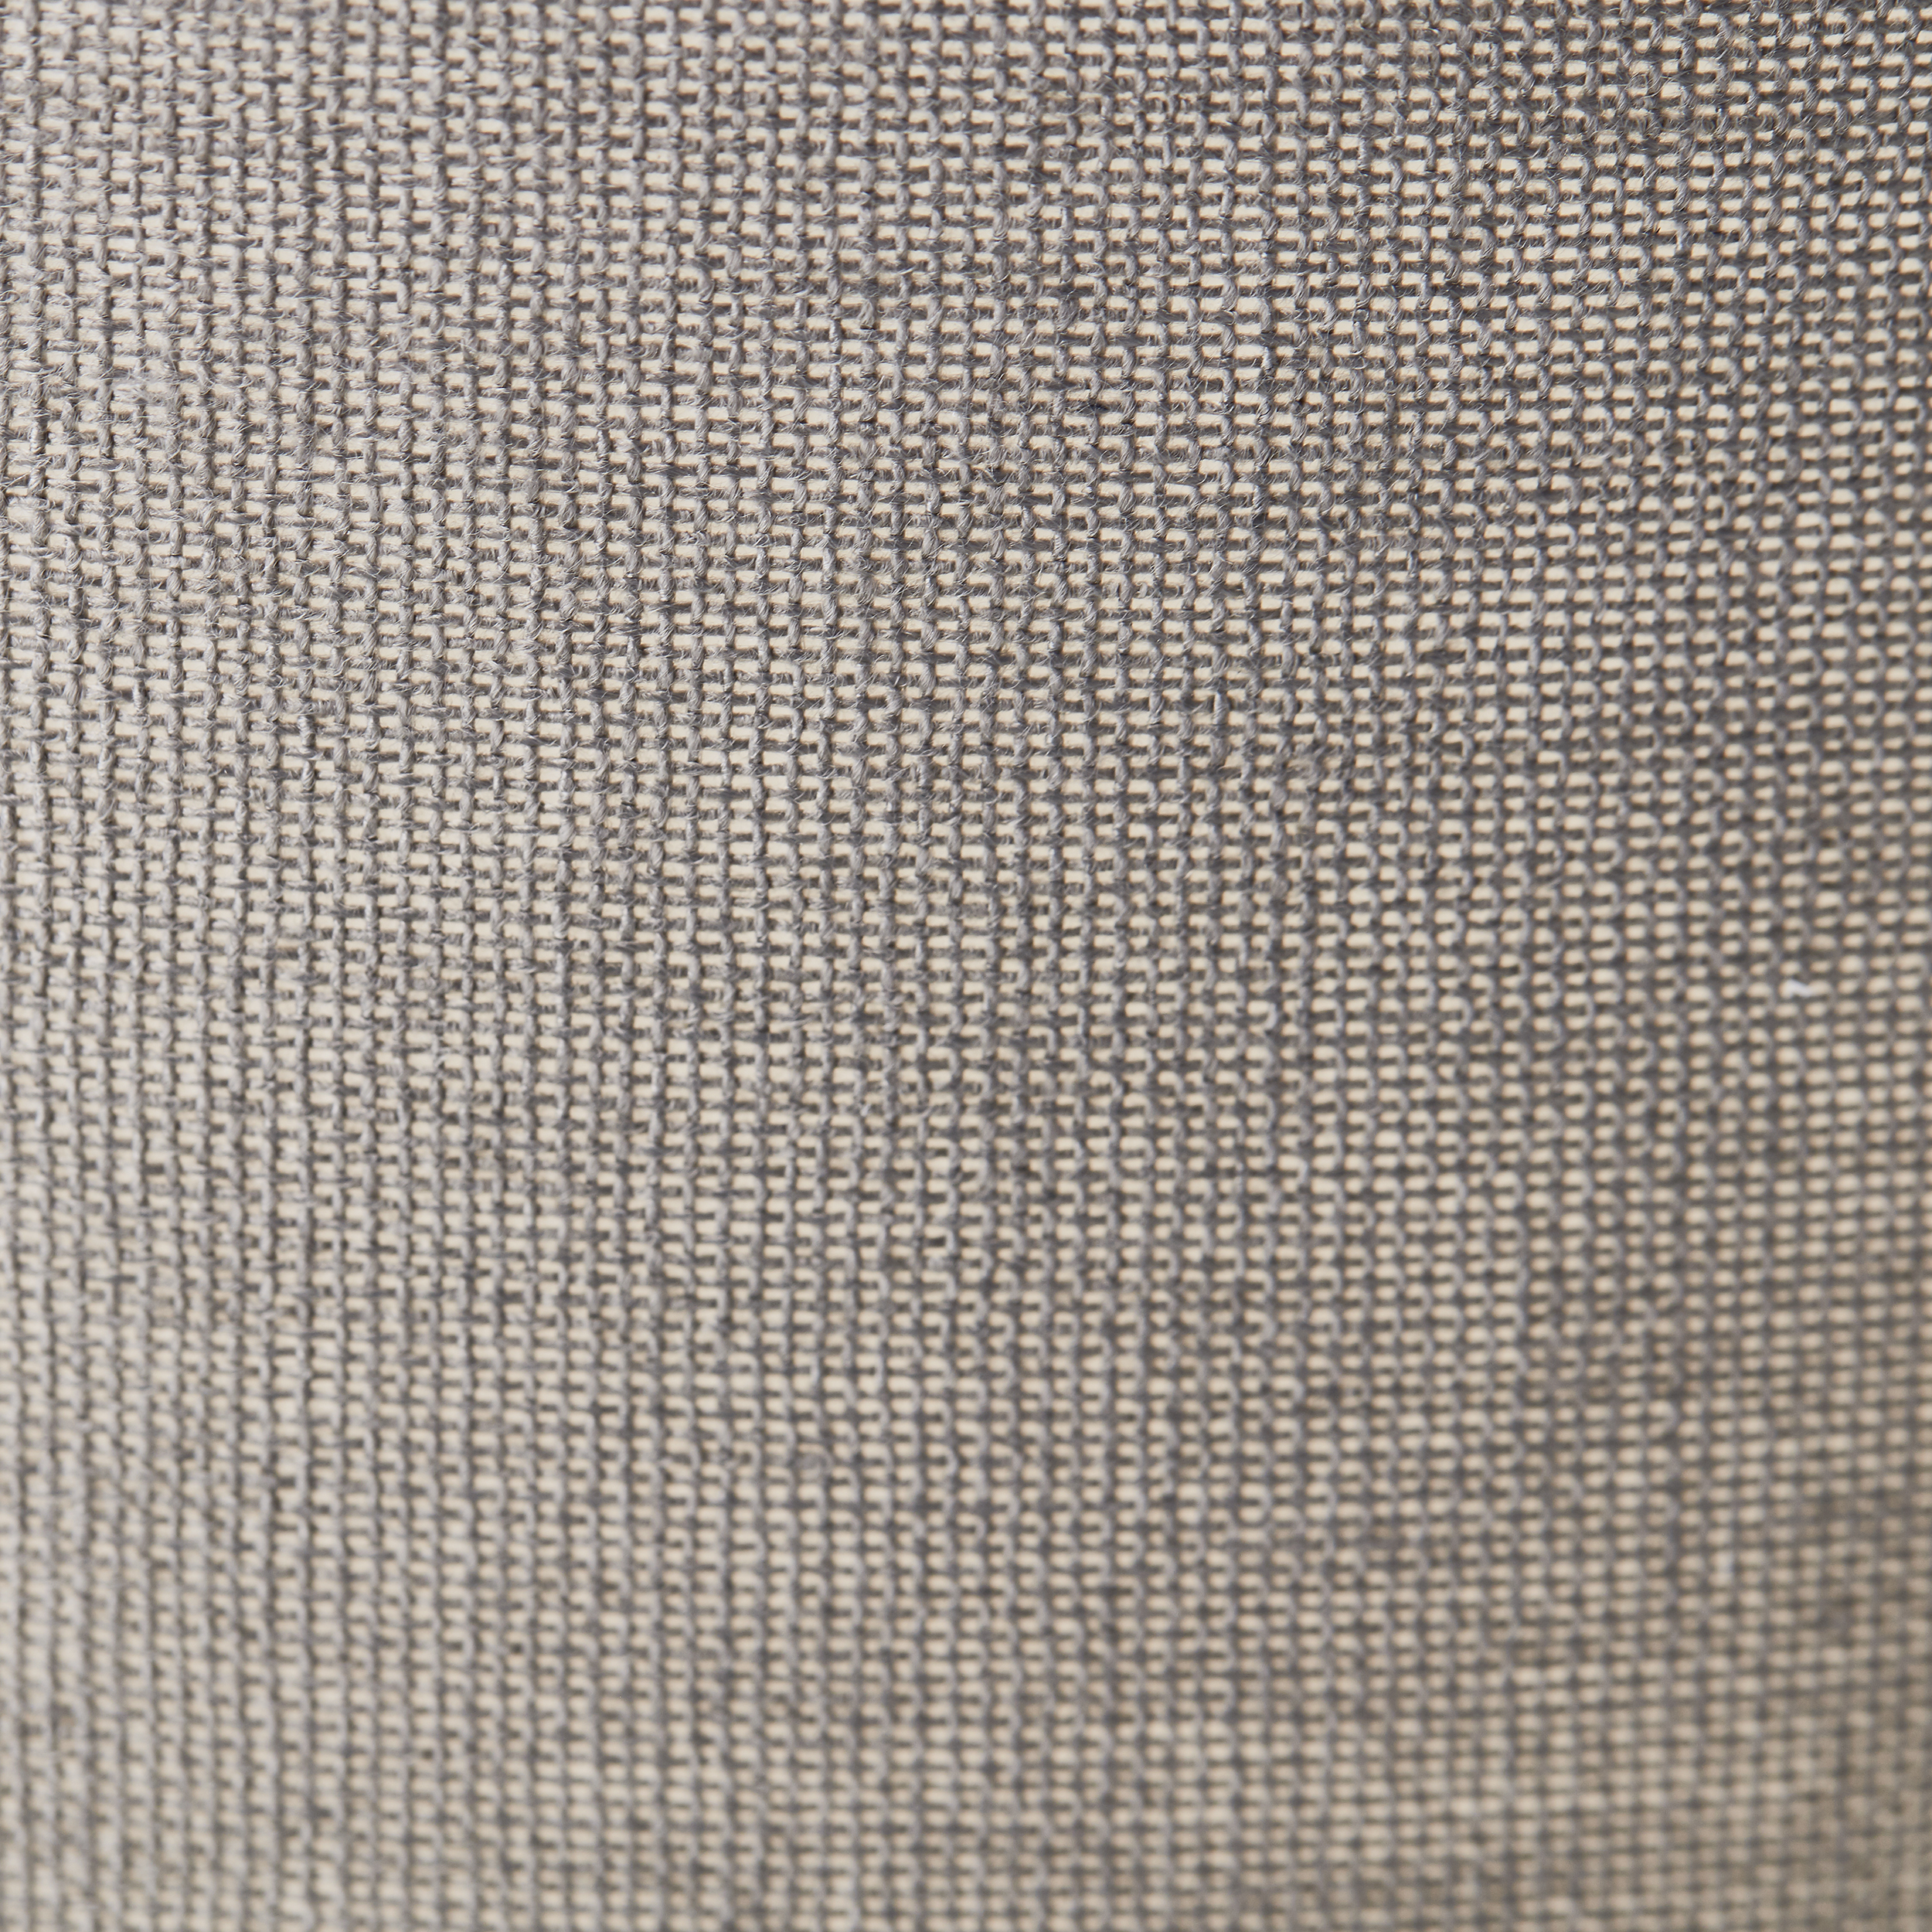 Tischleuchten Ilysa weiß/grau Keramik/Metall/Textil